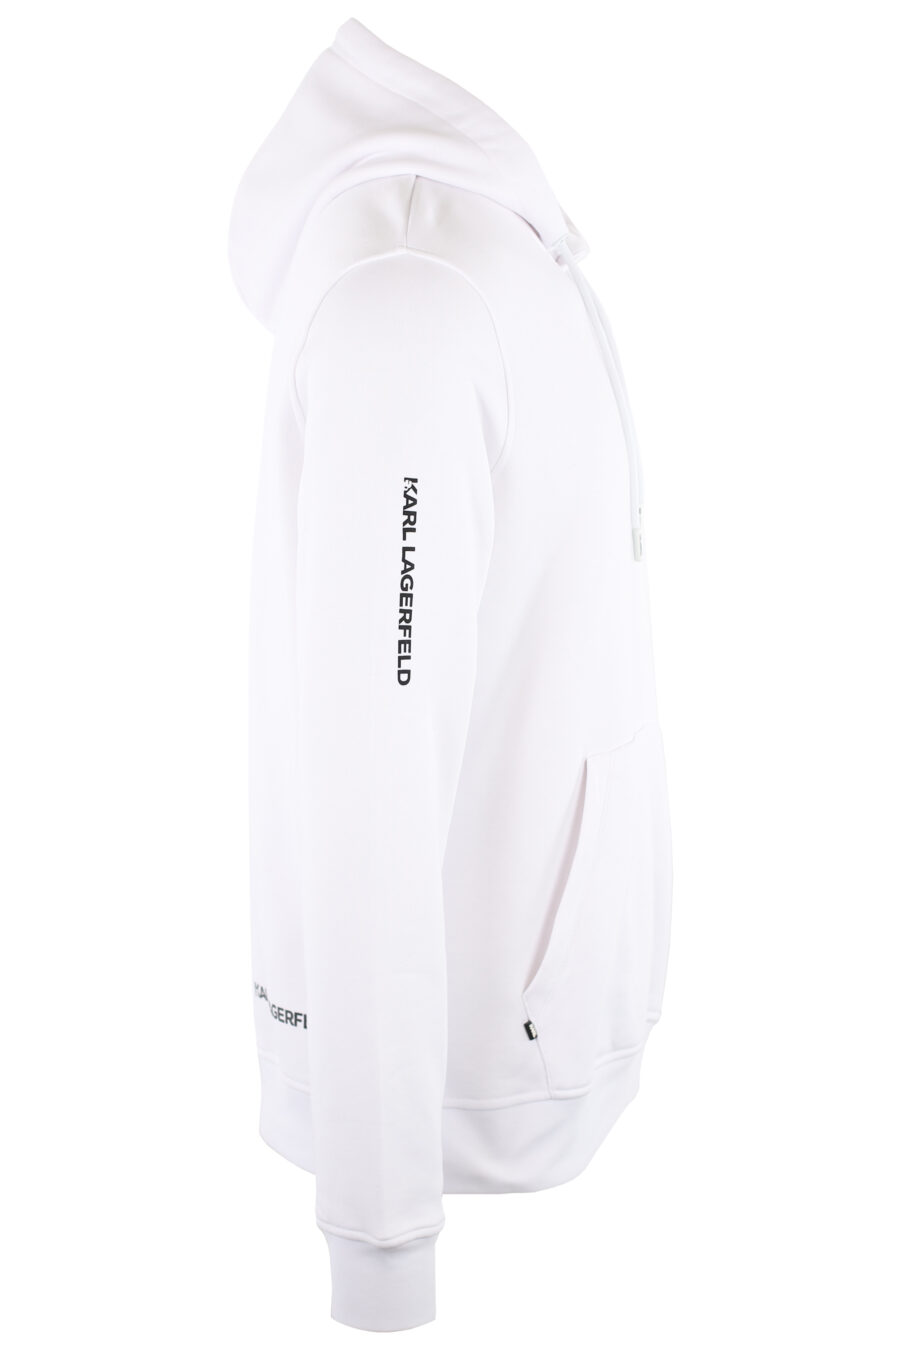 White sweatshirt with hood and logo "ikonik" small - IMG 7461